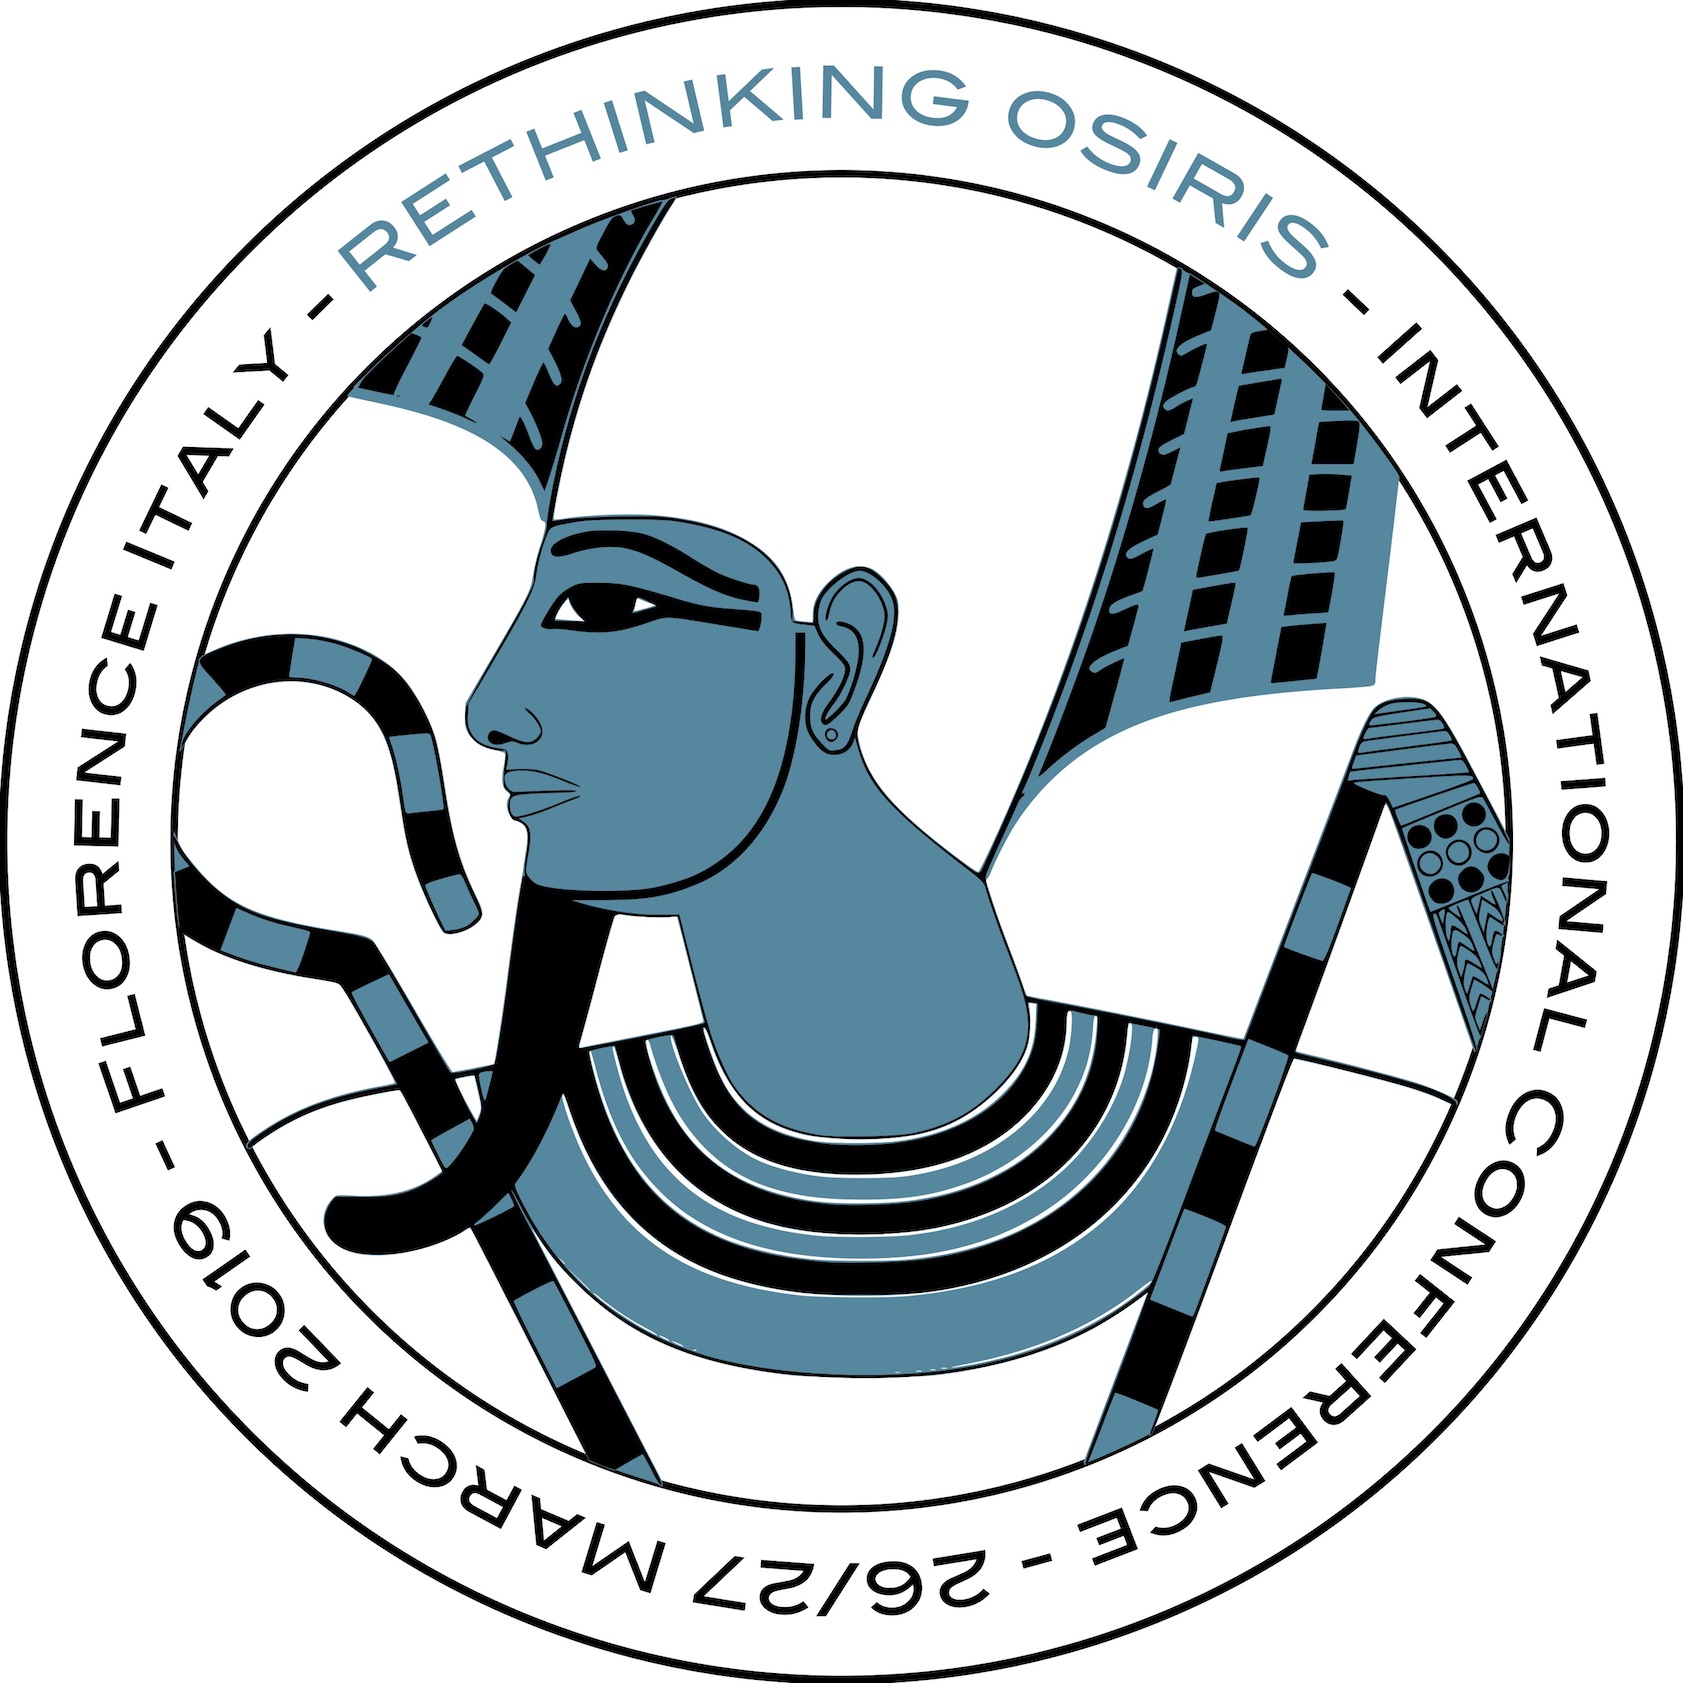 'Rethinking Osiris' - International Conference